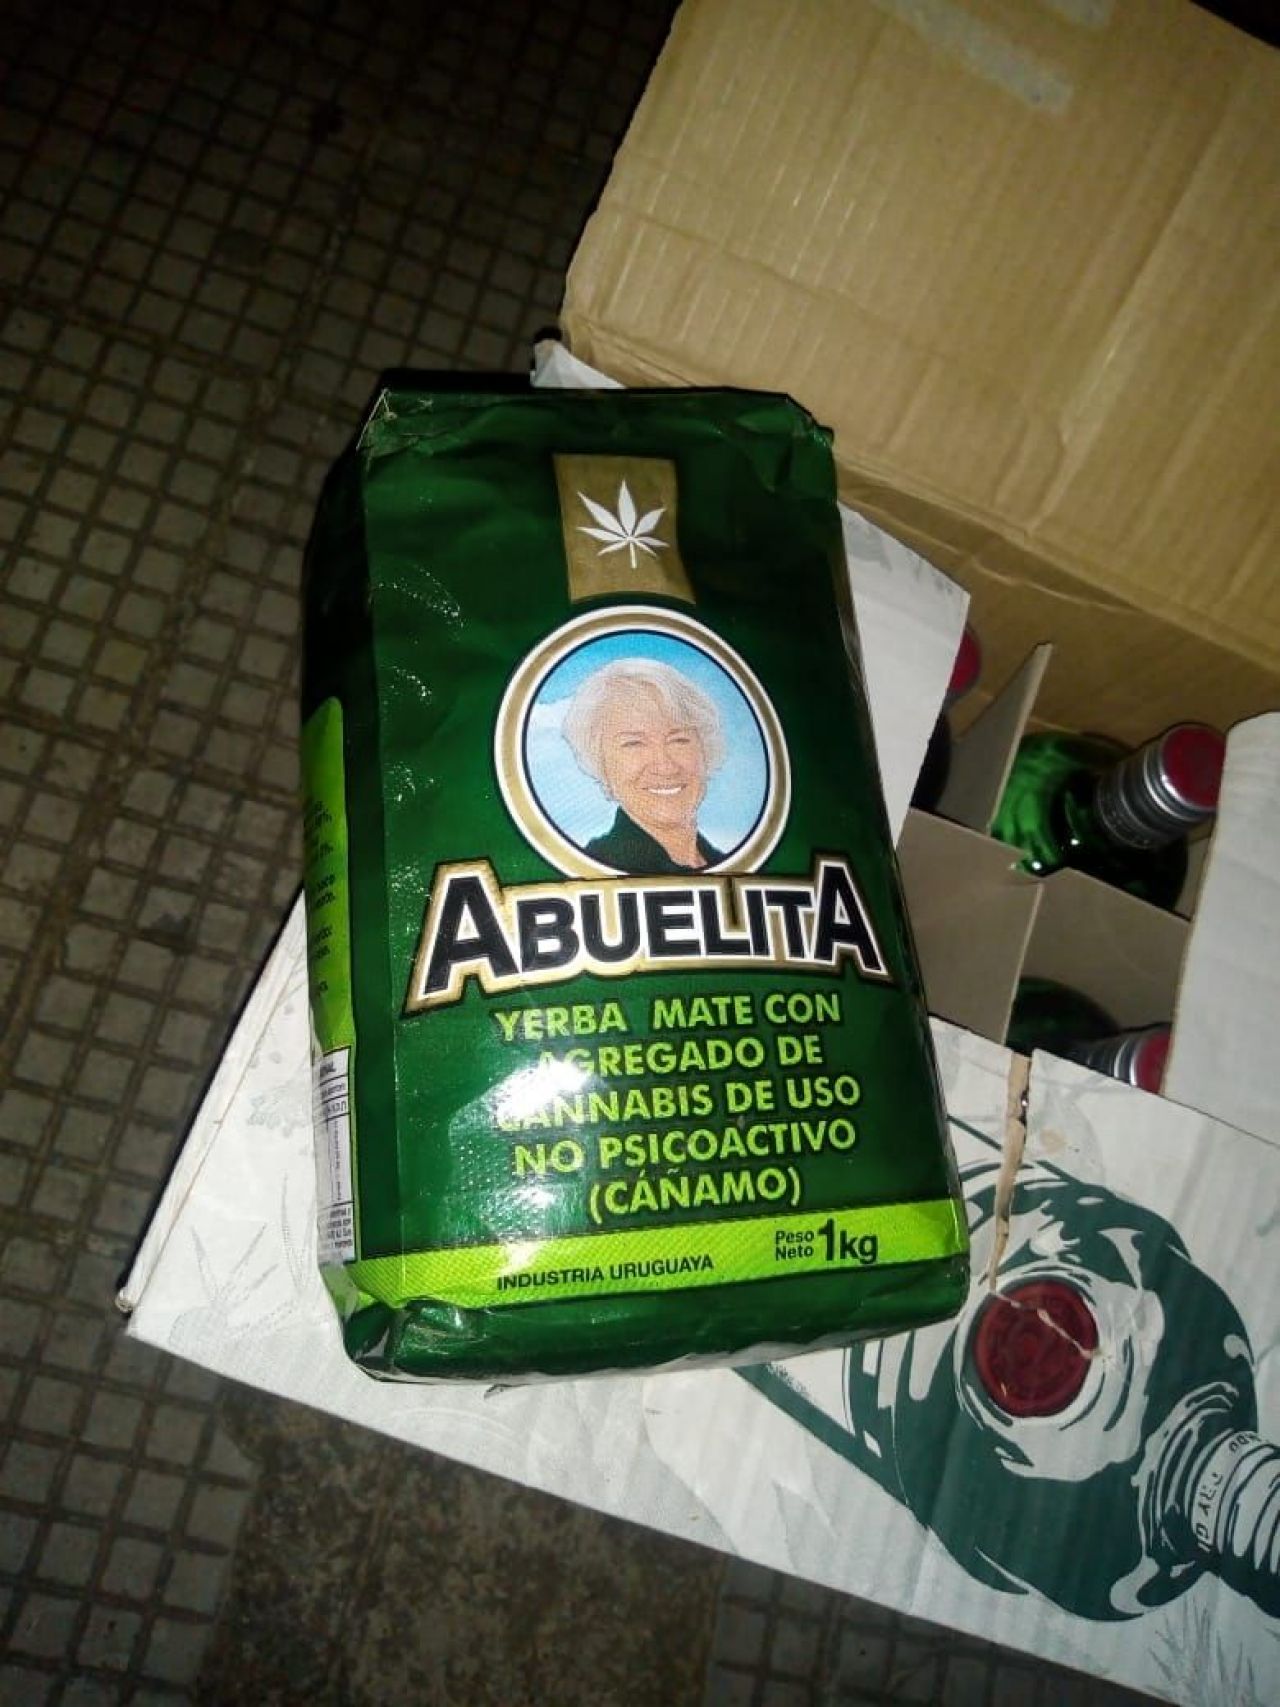 Resultado da erva mate com cannabis no pai, segundo ele era o único mate  disponível : r/brasil